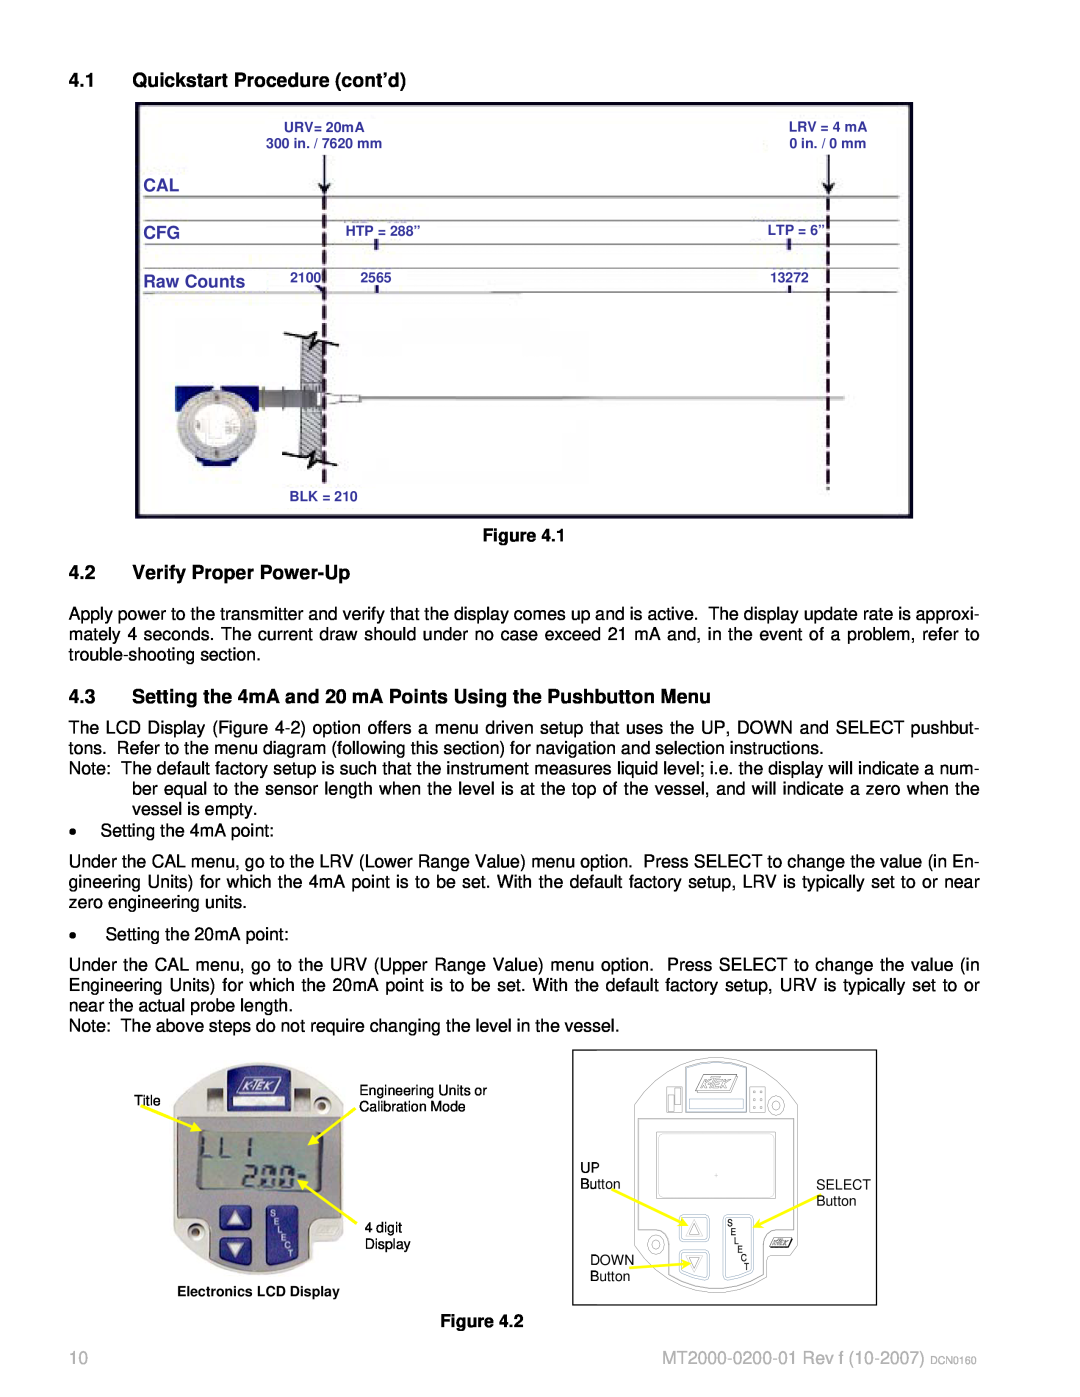 K-Tec manual 4.1Quickstart Procedure cont’d, 4.2Verify Proper Power-Up, Raw Counts, MT2000-0200-01Rev f 10-2007 DCN0160 